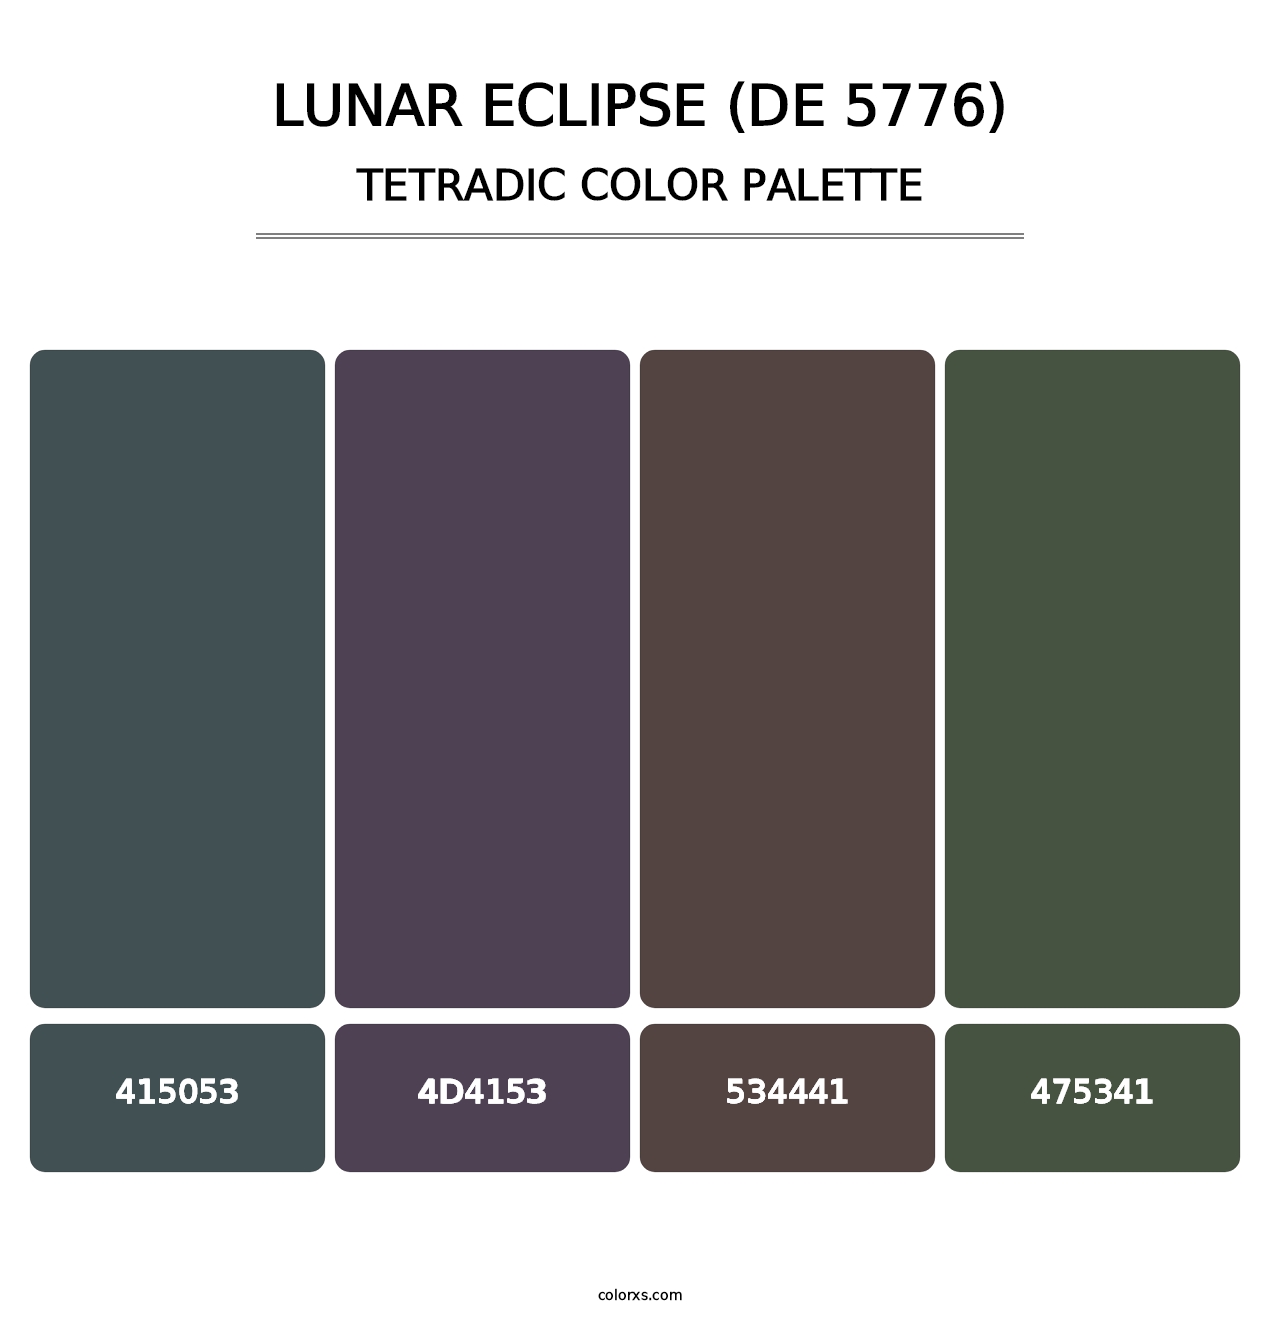 Lunar Eclipse (DE 5776) - Tetradic Color Palette